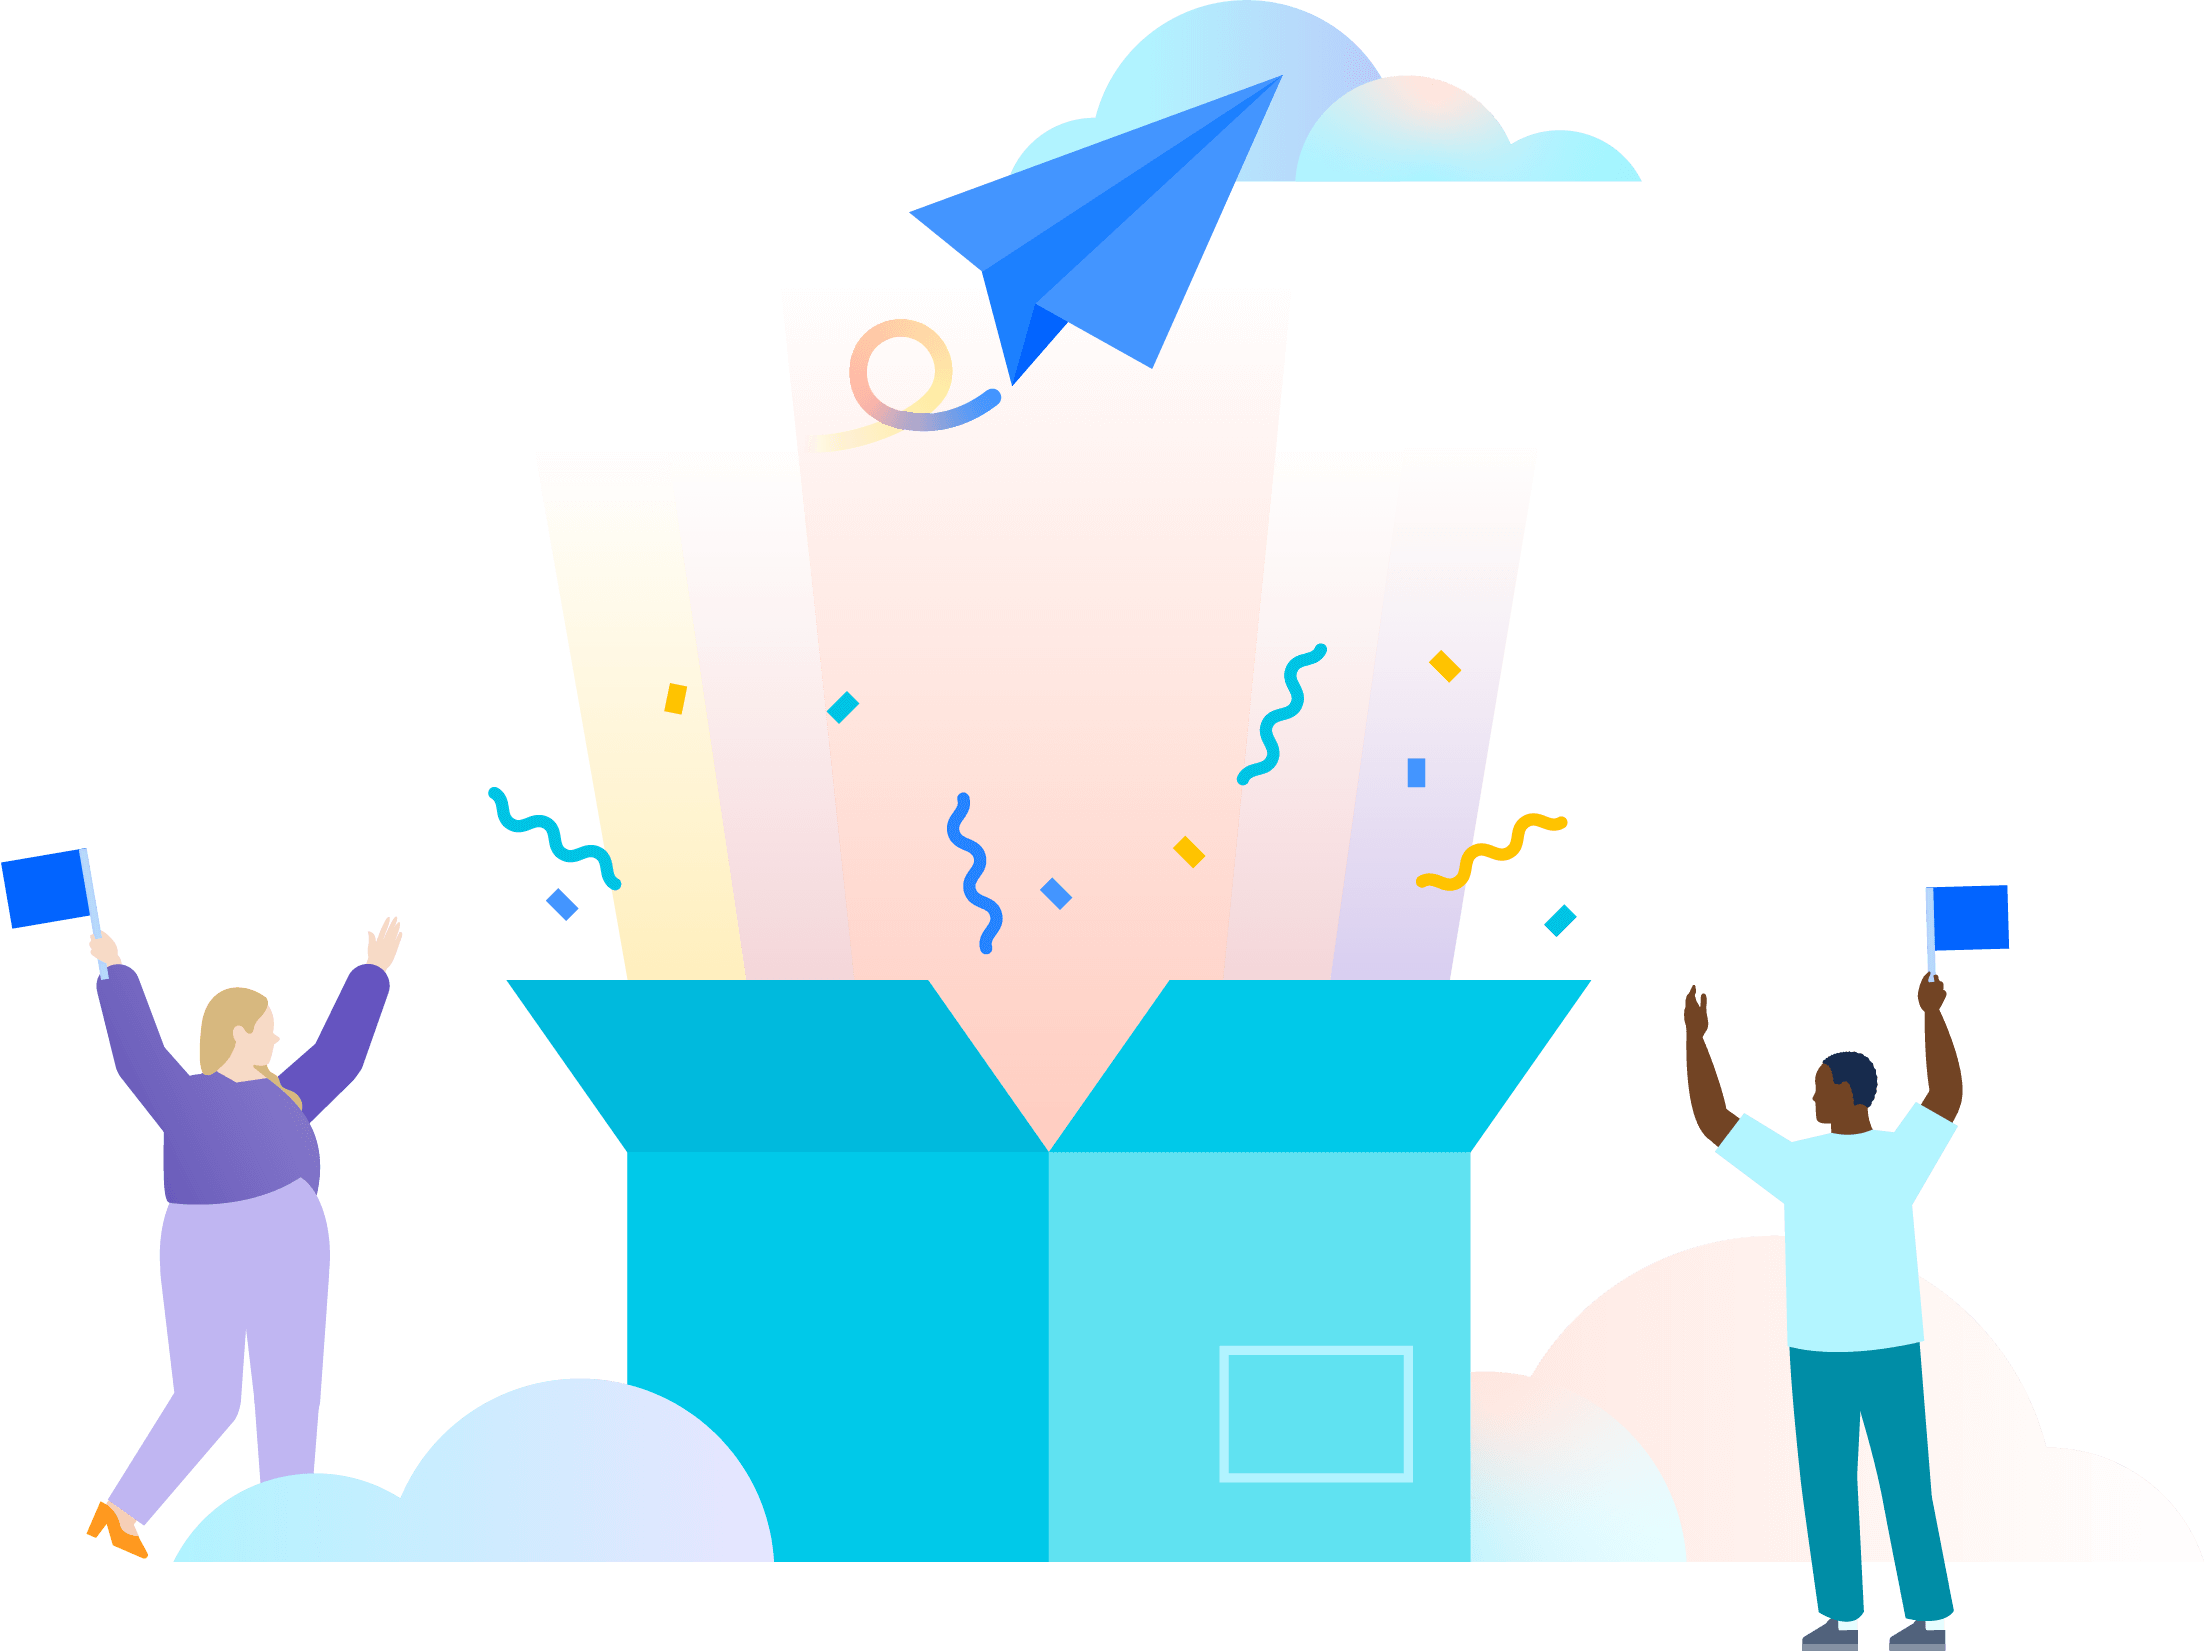 Рисунок, на котором два человека празднуют открытие огромной бирюзовой коробки, откуда исходят разноцветные лучи света, а также вылетает конфетти и синий бумажный самолетик, устремившийся к облакам.